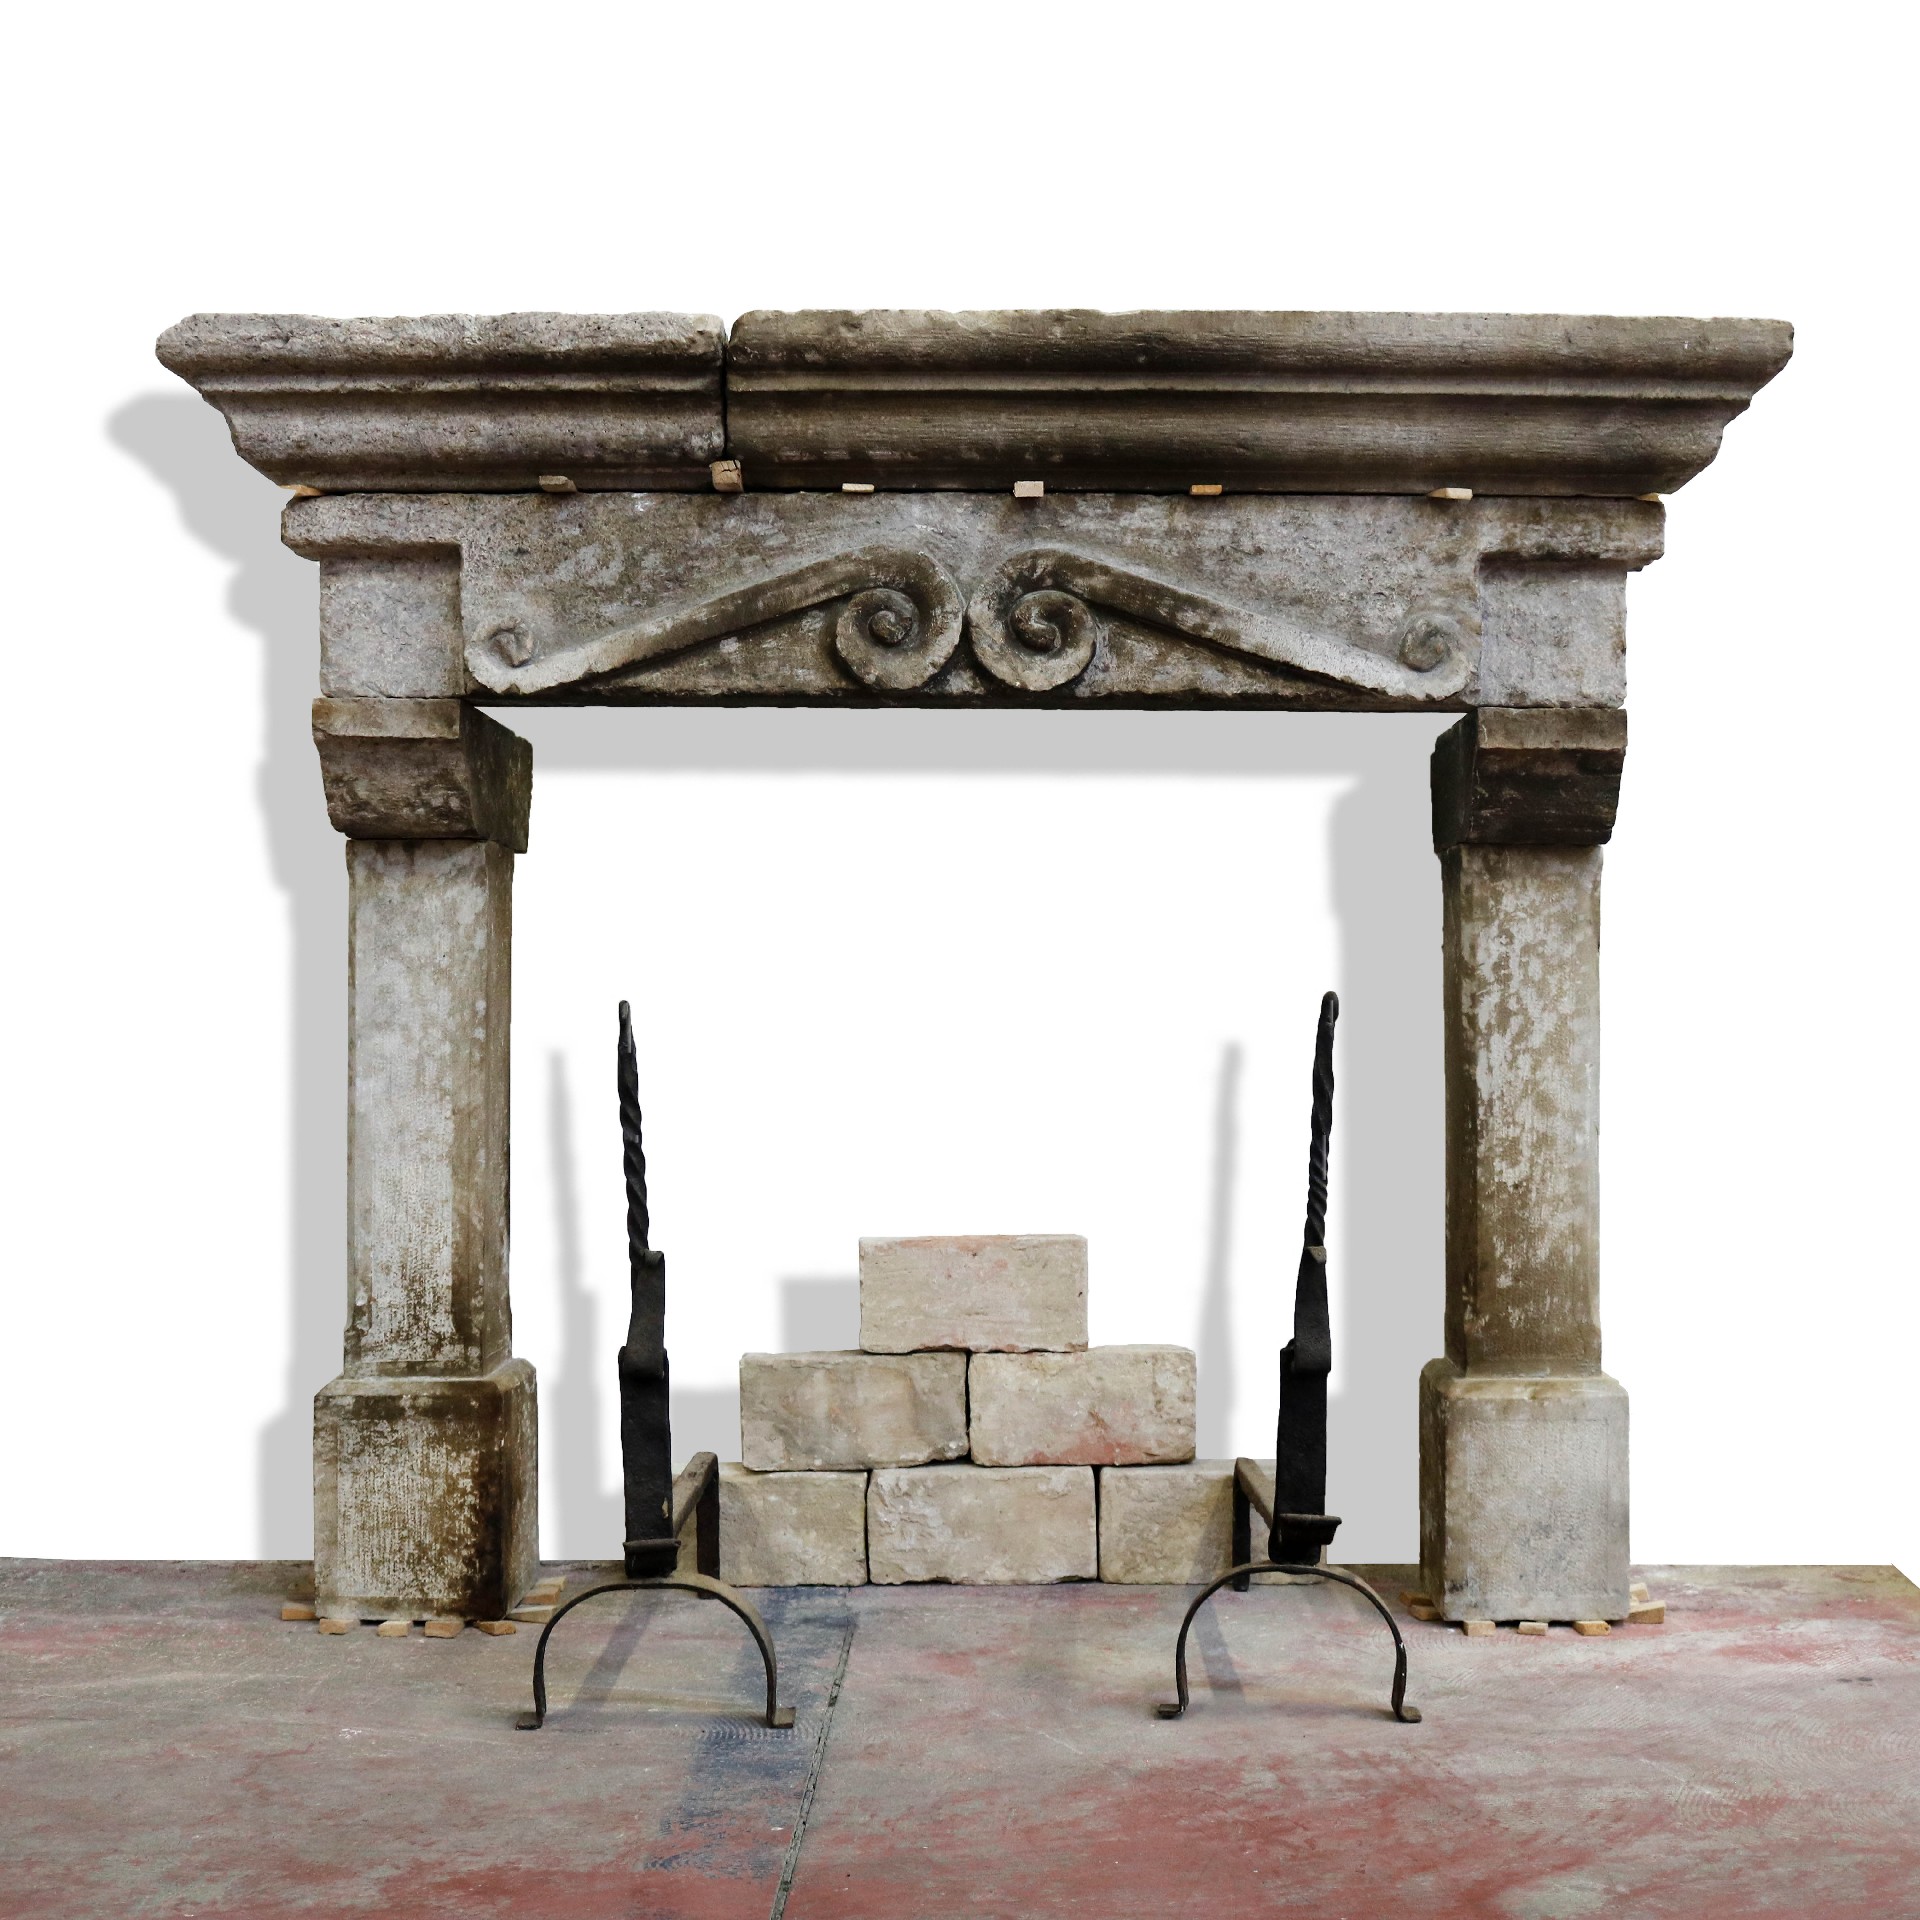 Camino antico in pietra, cm 125x104 h. - Camini Antichi - Camini e Accessori - Prodotti - Antichità Fiorillo